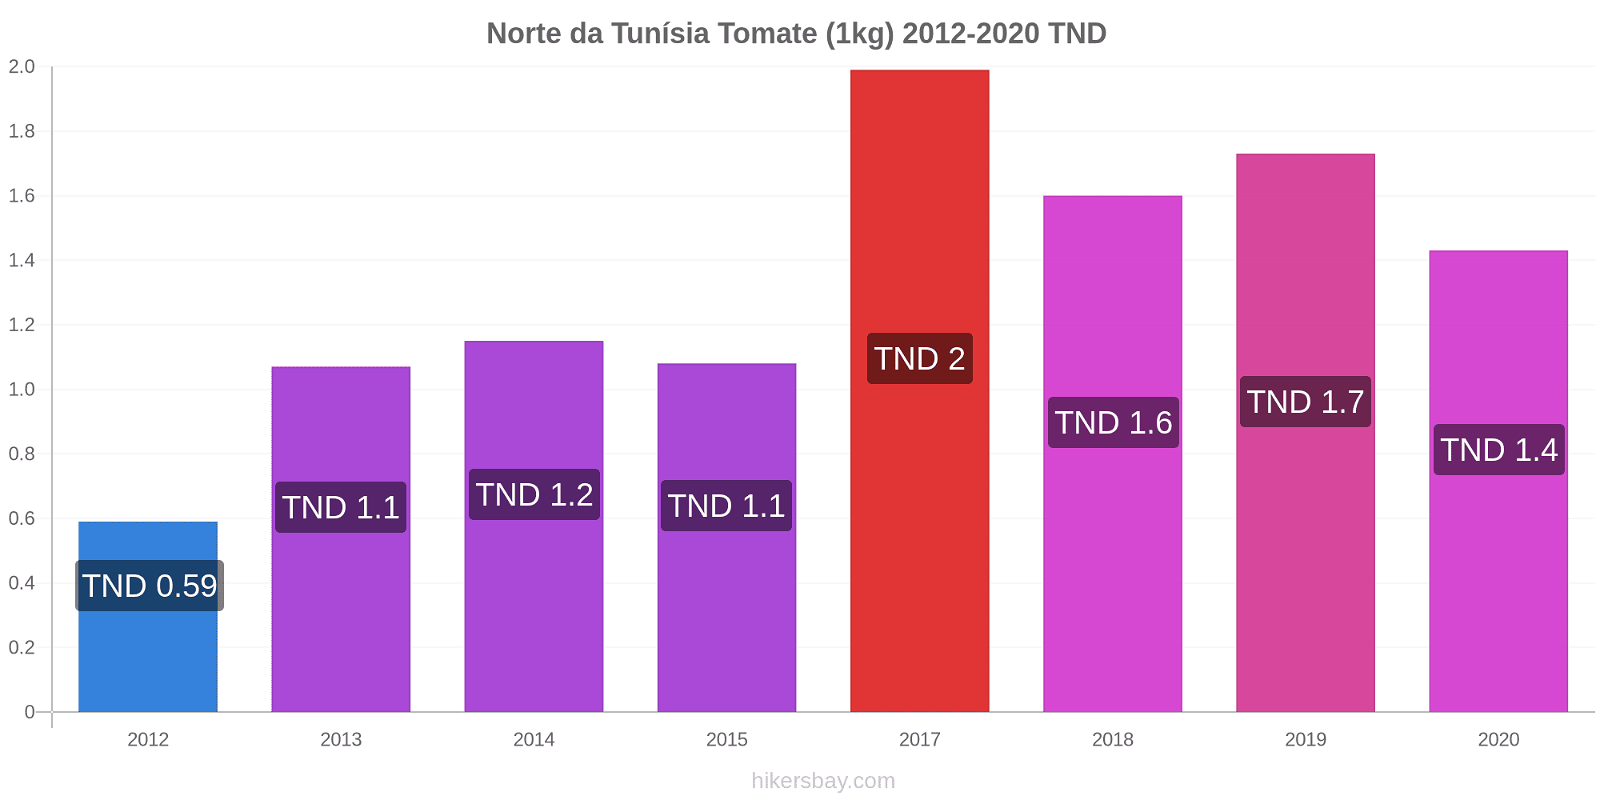 Norte da Tunísia variação de preço Tomate (1kg) hikersbay.com